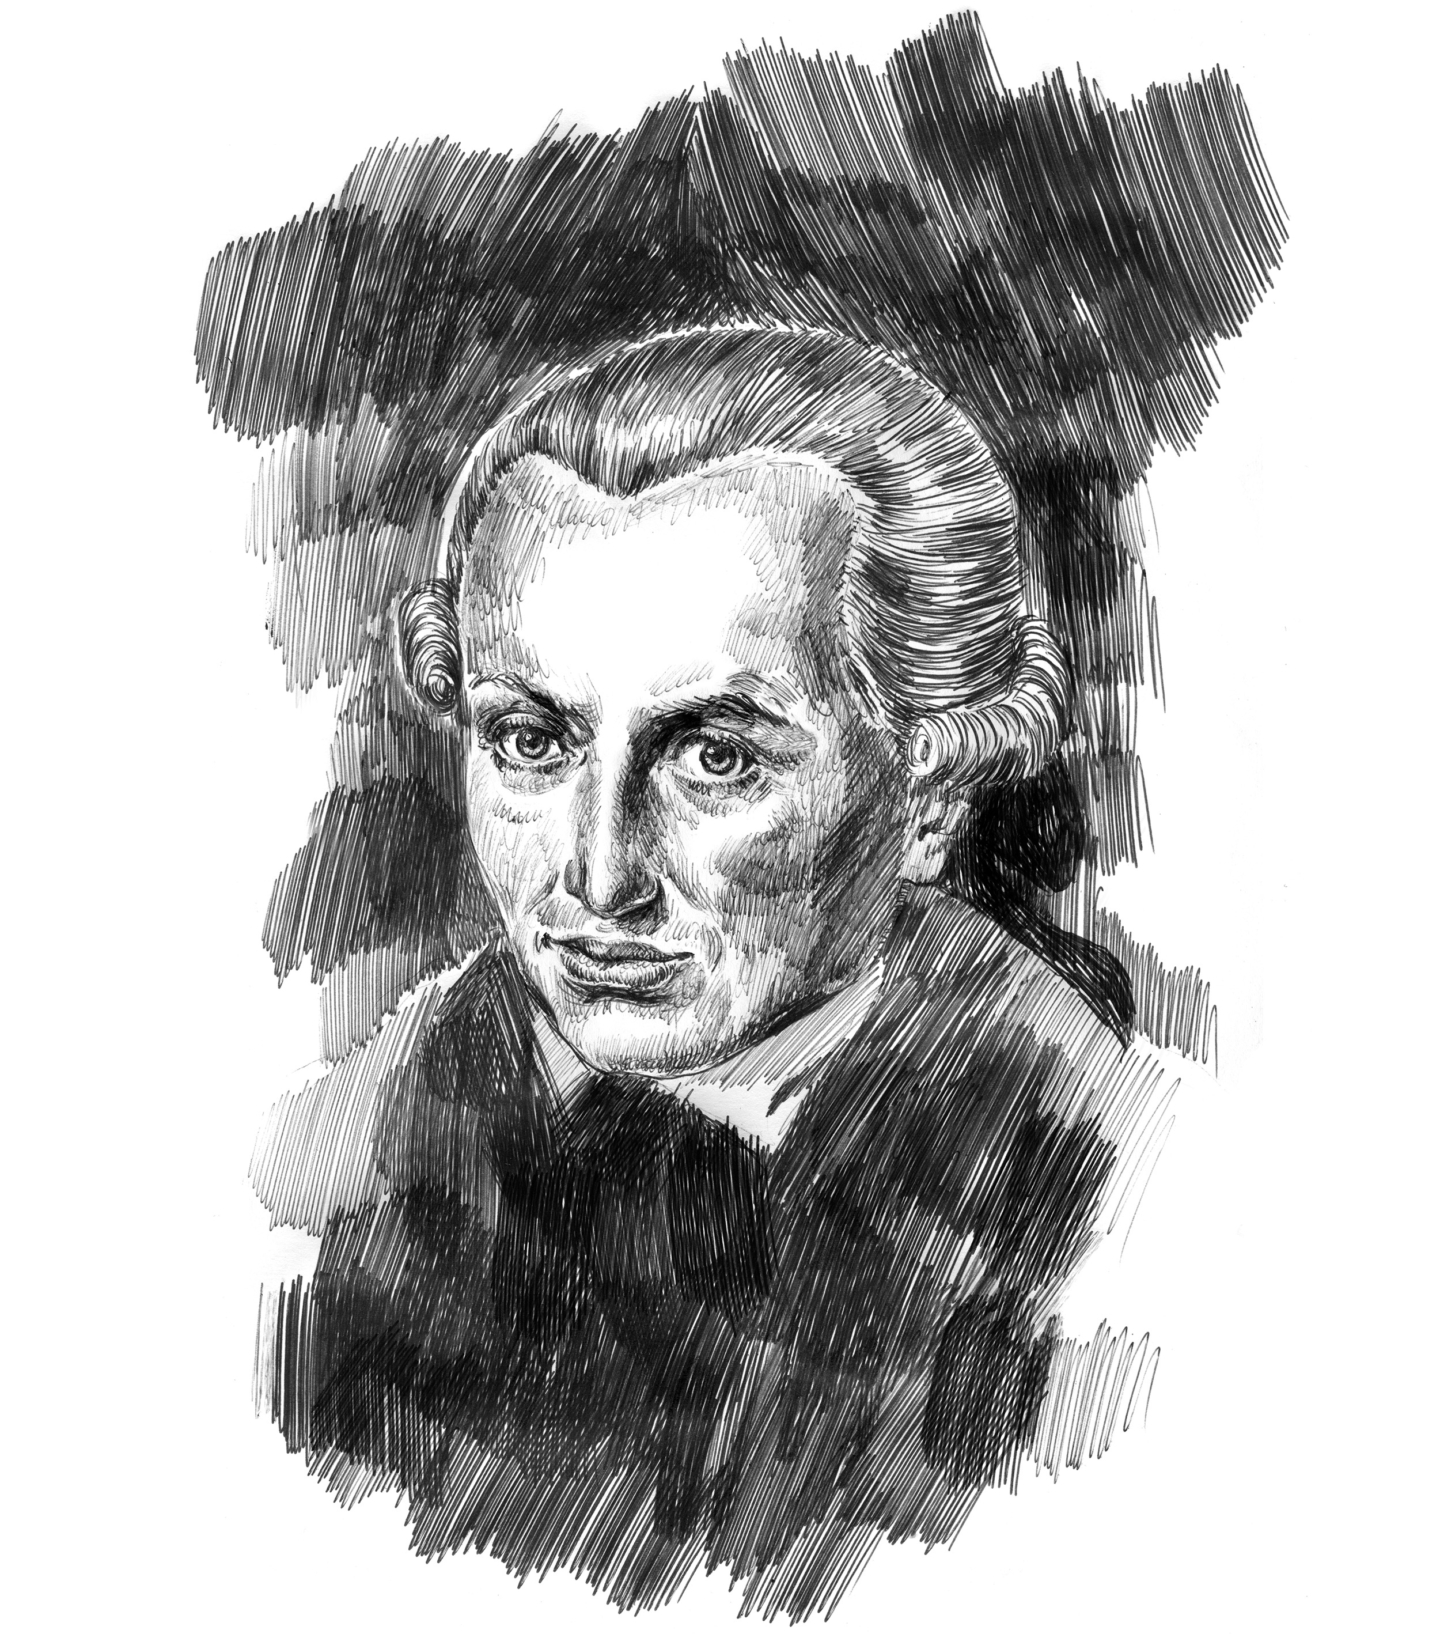 Elisabeth Moch - Immanuel Kant for Philosophie Magazine (1 / 50)